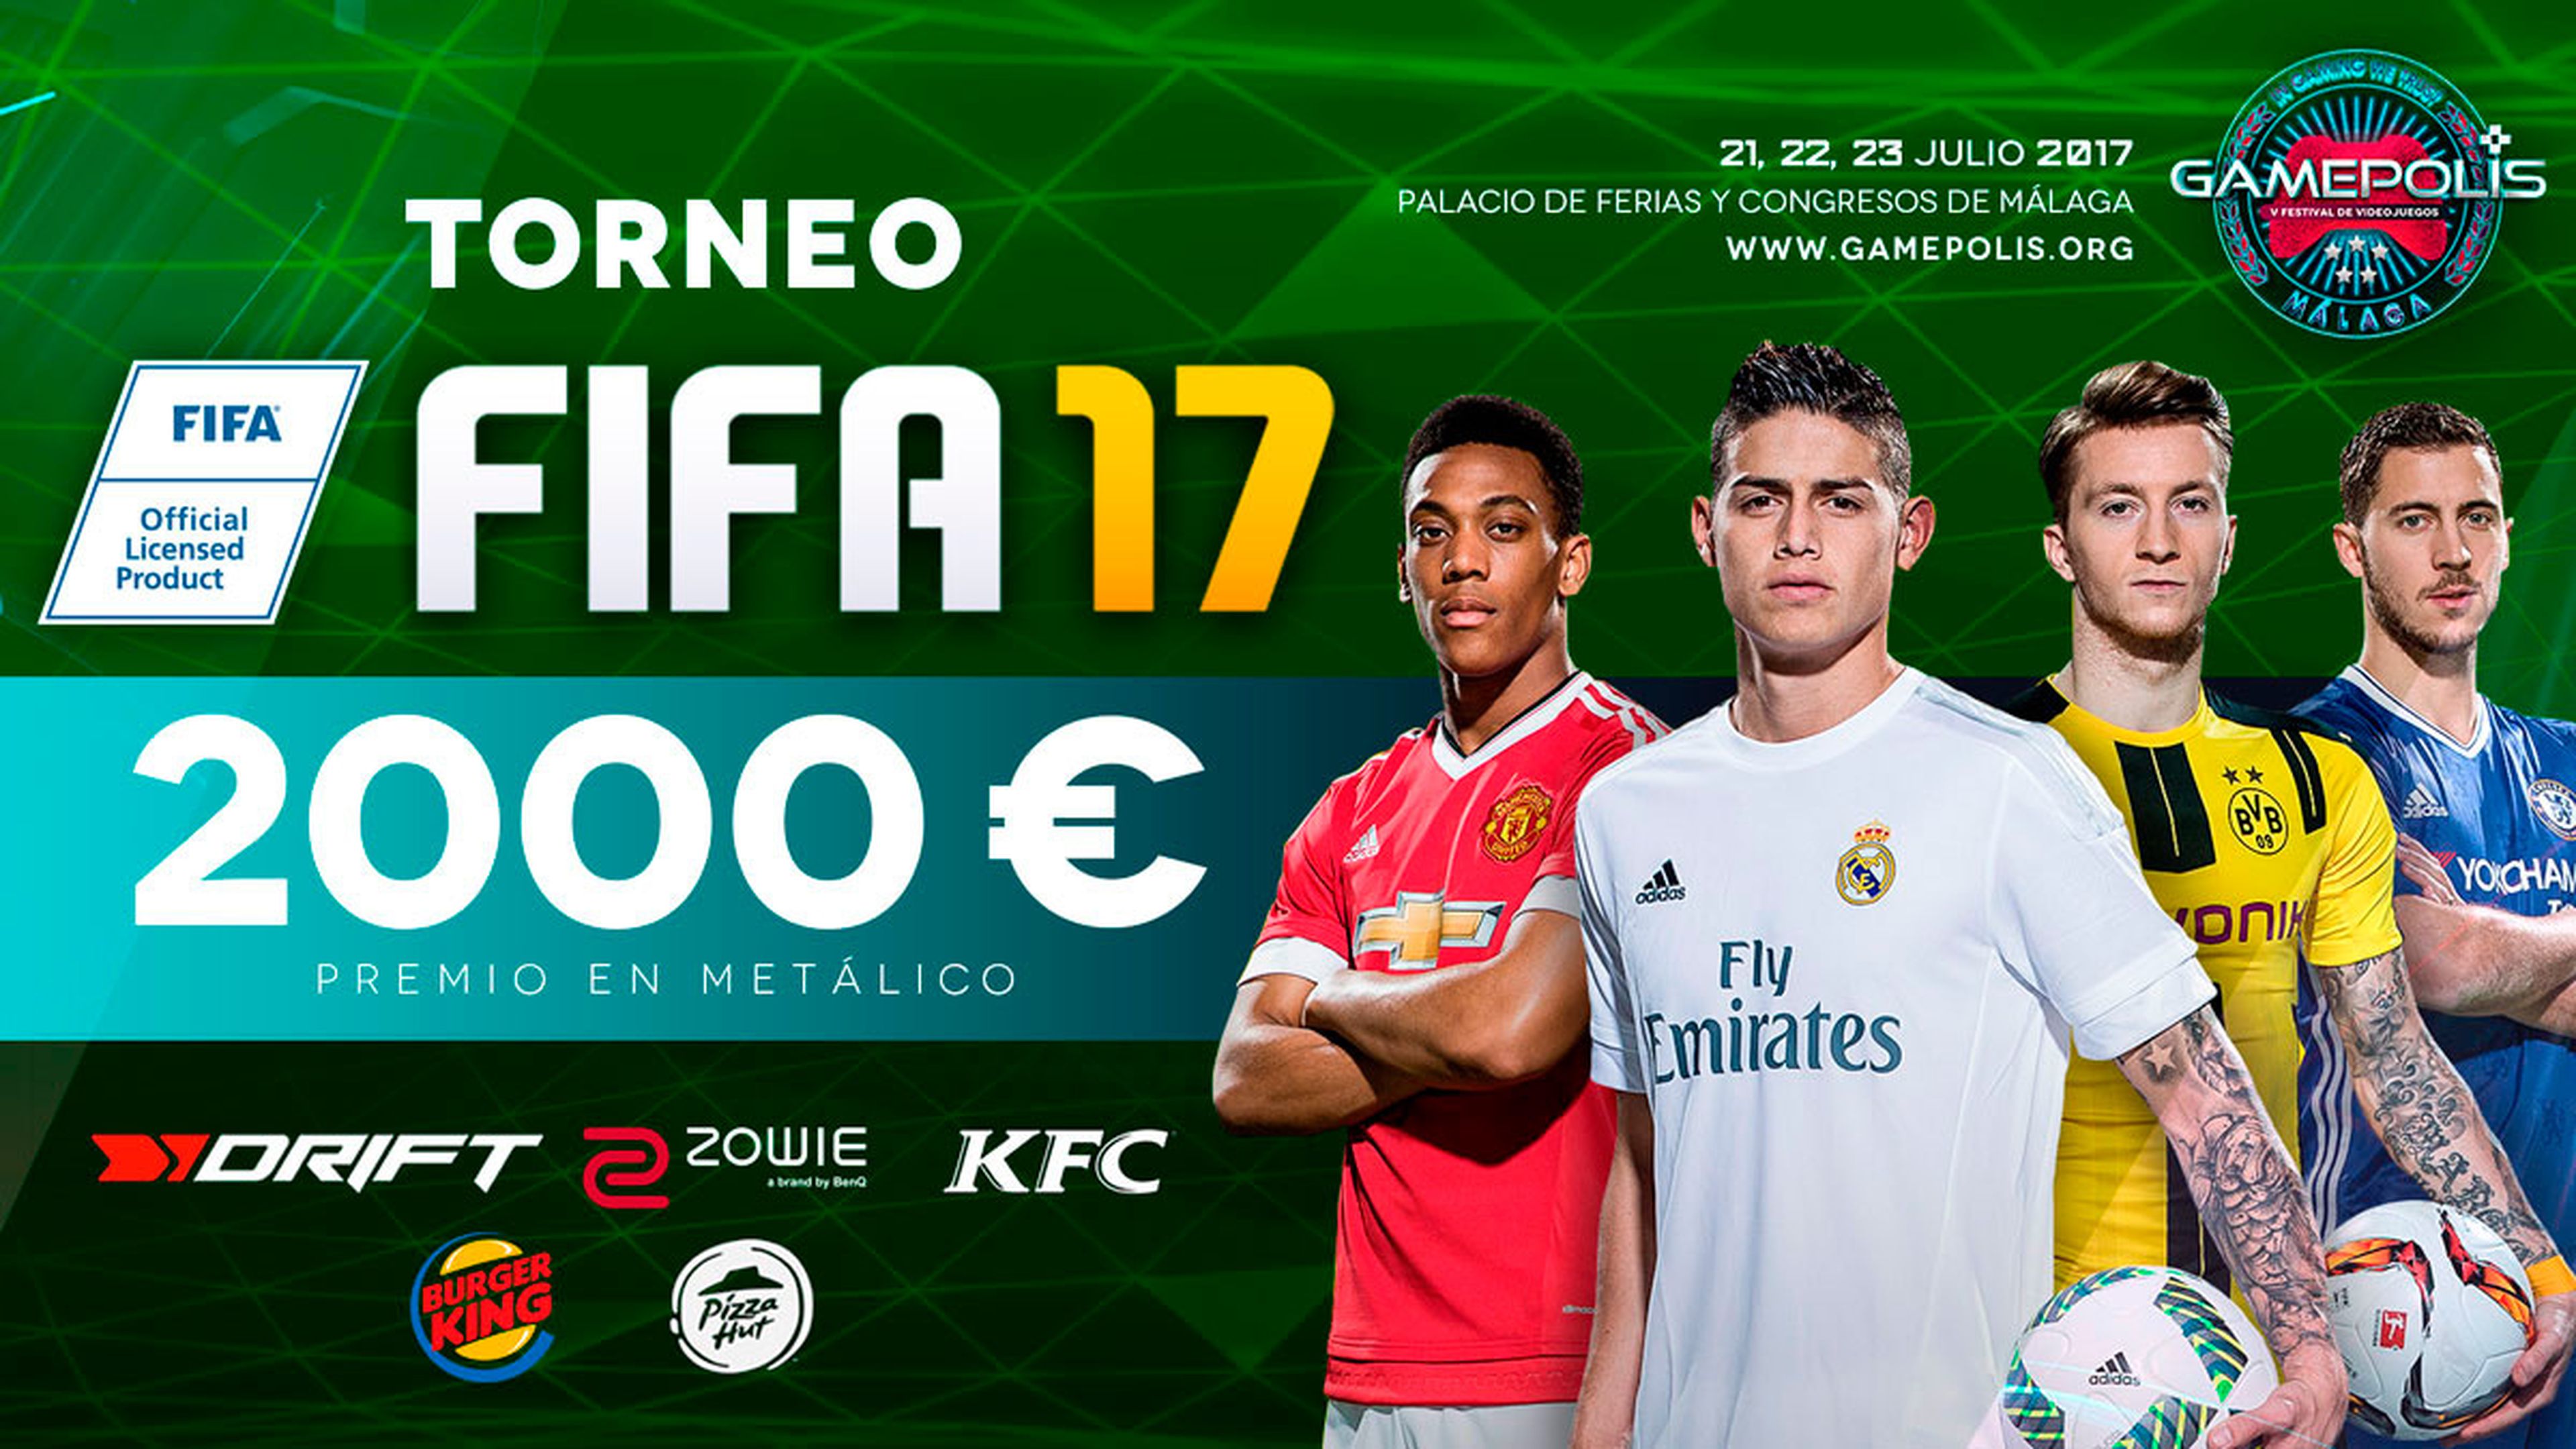 Torneo FIFA 17 en Gamepolis 2017